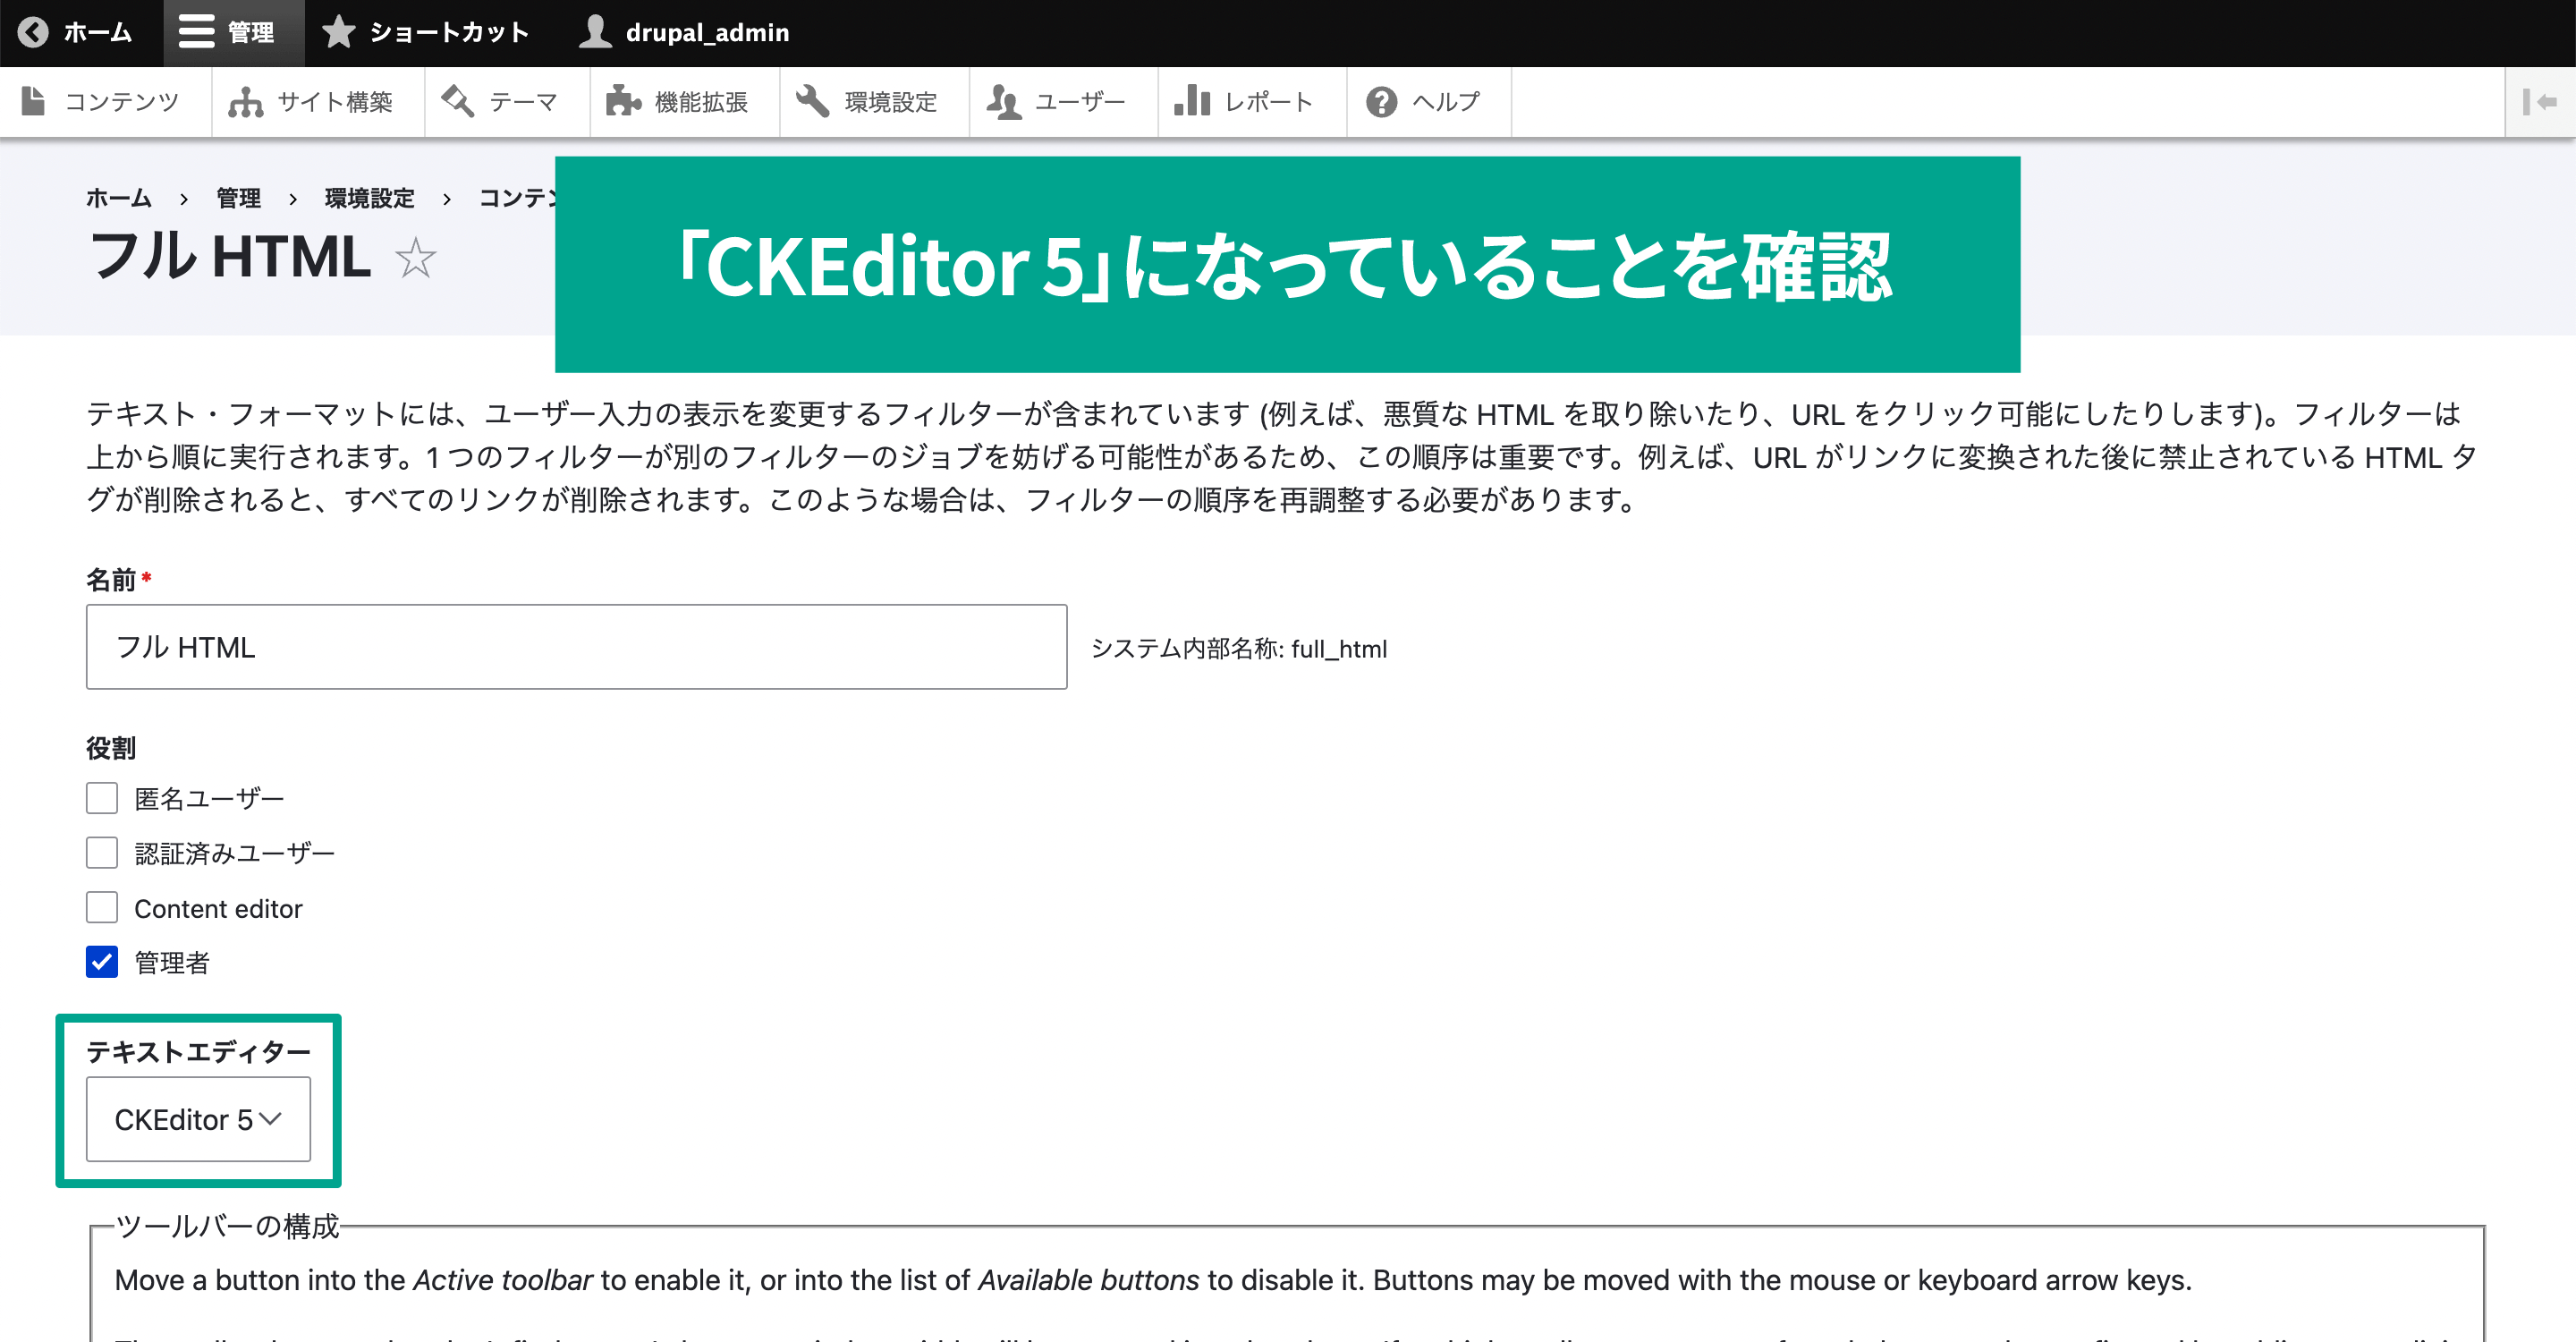 テキストエディター項目が「CKEditor 5」になっていることを確認。インストールされた状態だと設定されています。